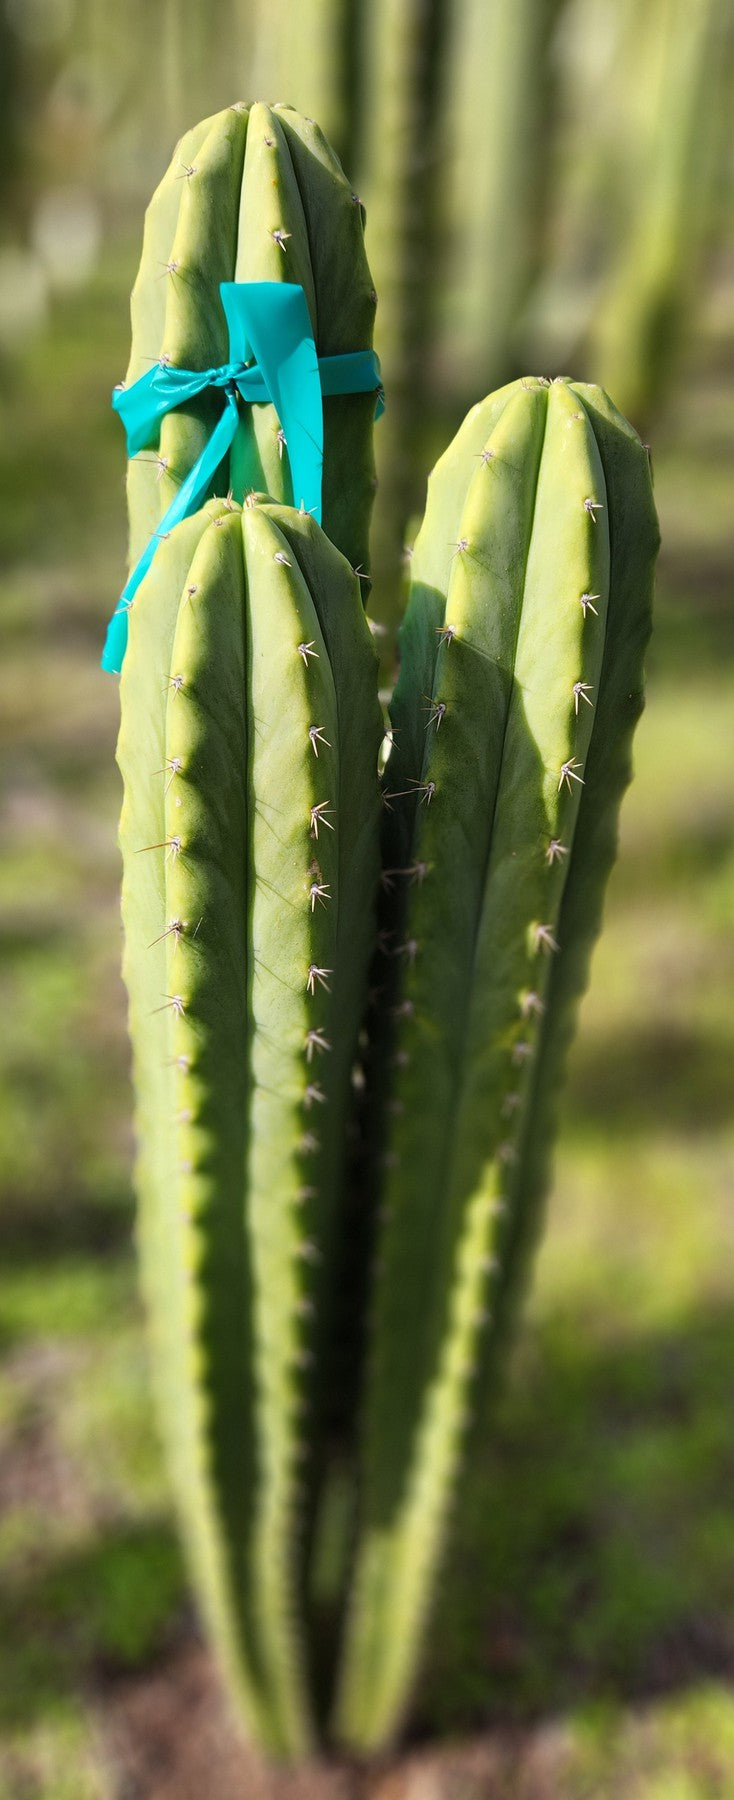 #EC311 EXACT Trichocereus Huanucabamba X Pach Oscar Cactus Cutting 10-12"